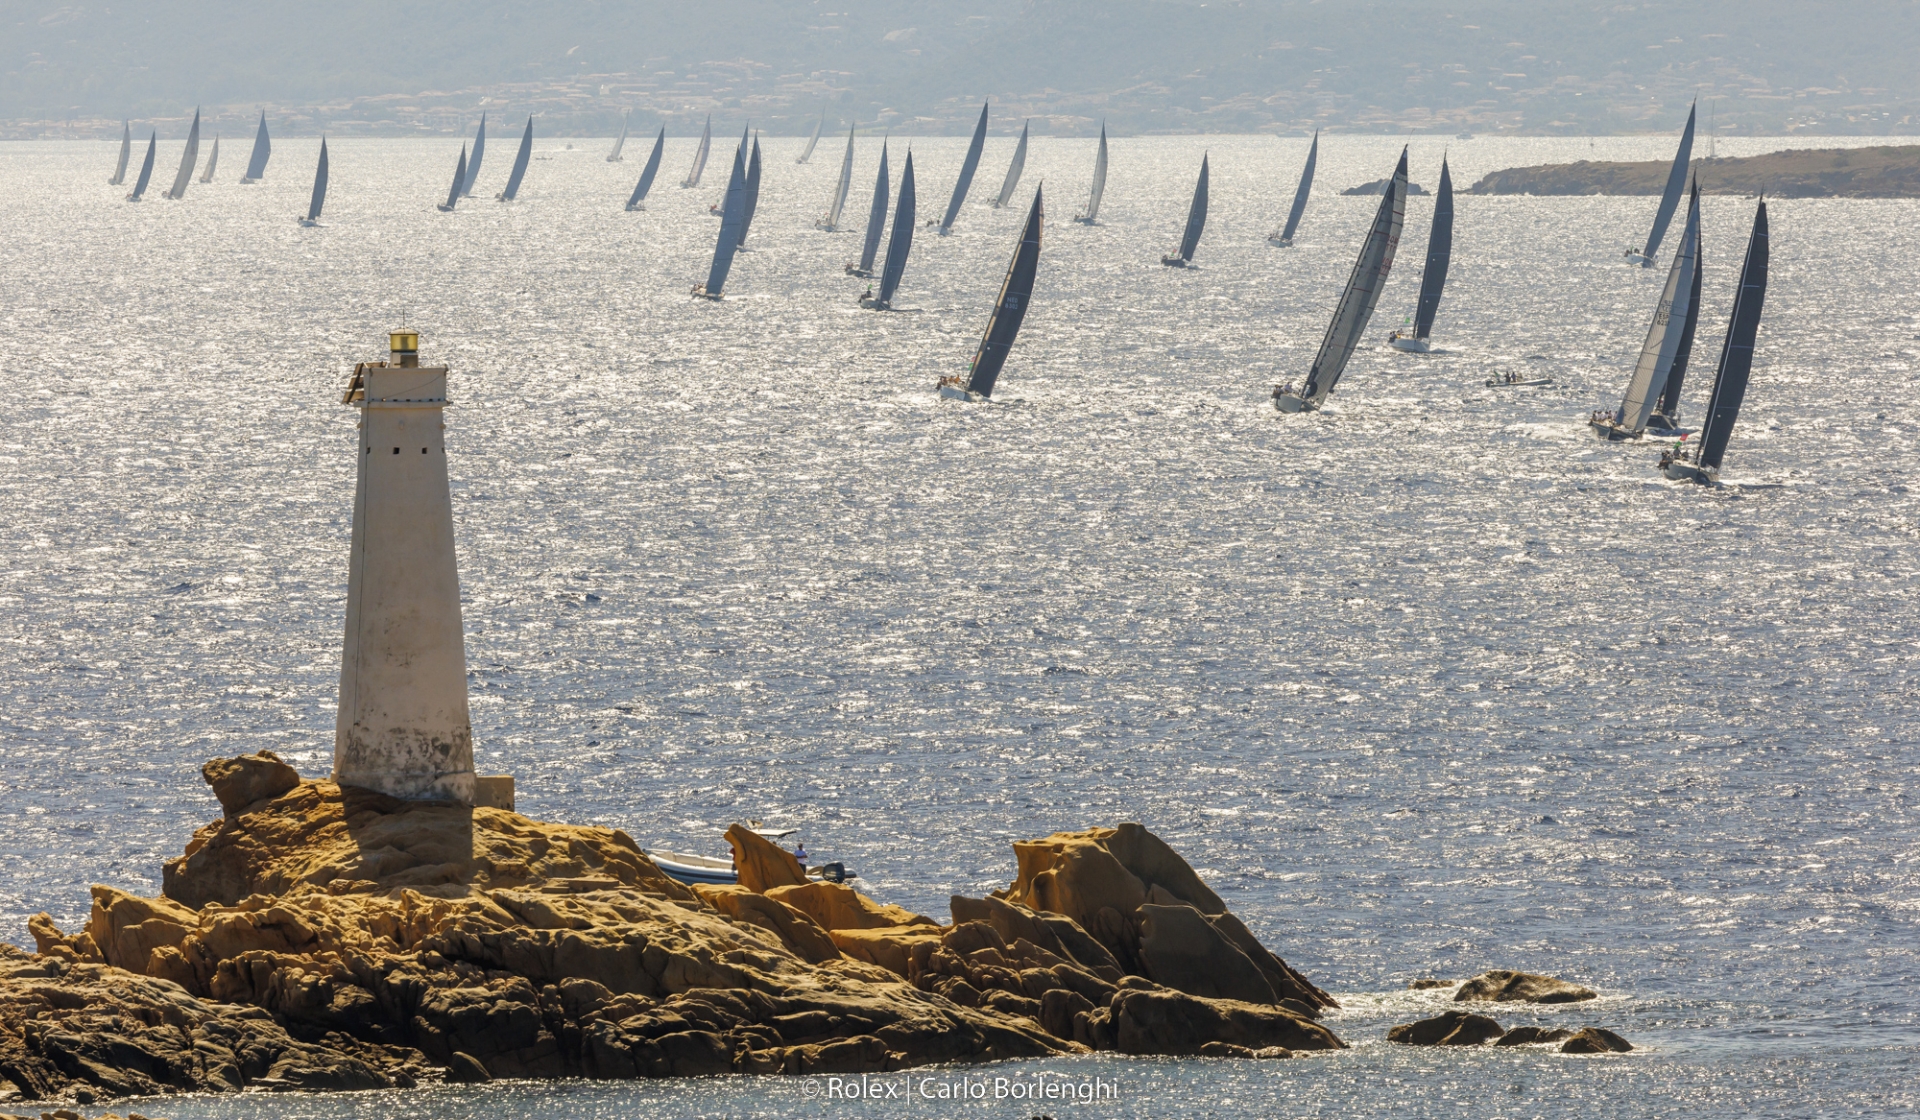 Prima giornata perfetta per la 21^ Rolex Swan Cup - Comunicati Stampa - Yacht Club Costa Smeralda